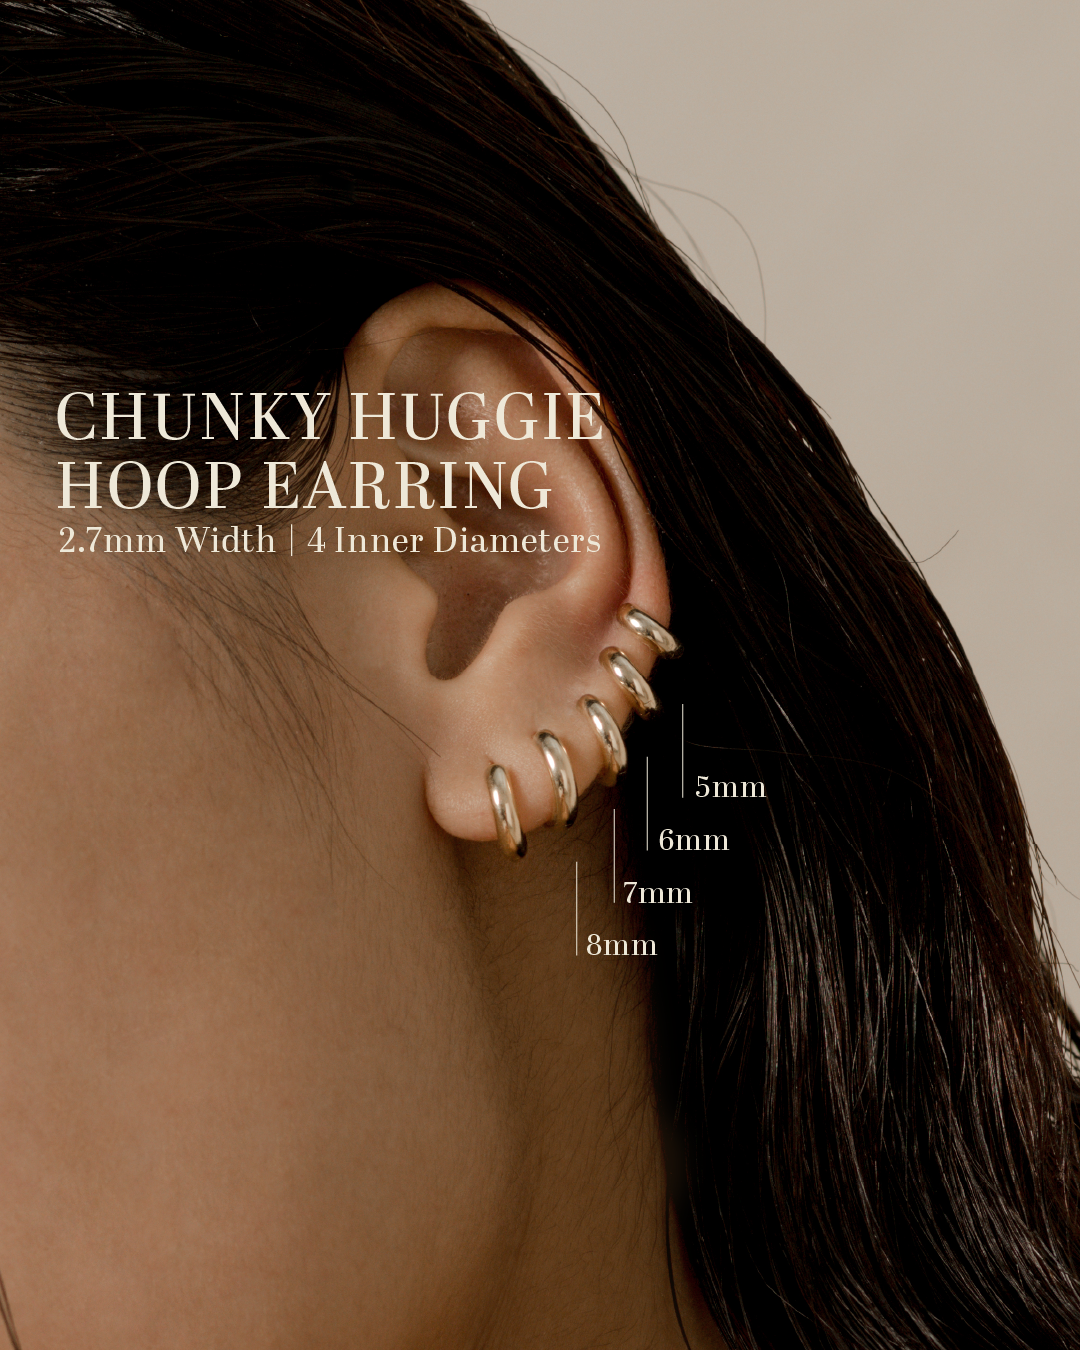 Chunky Huggie Hoop Earring - 6mm